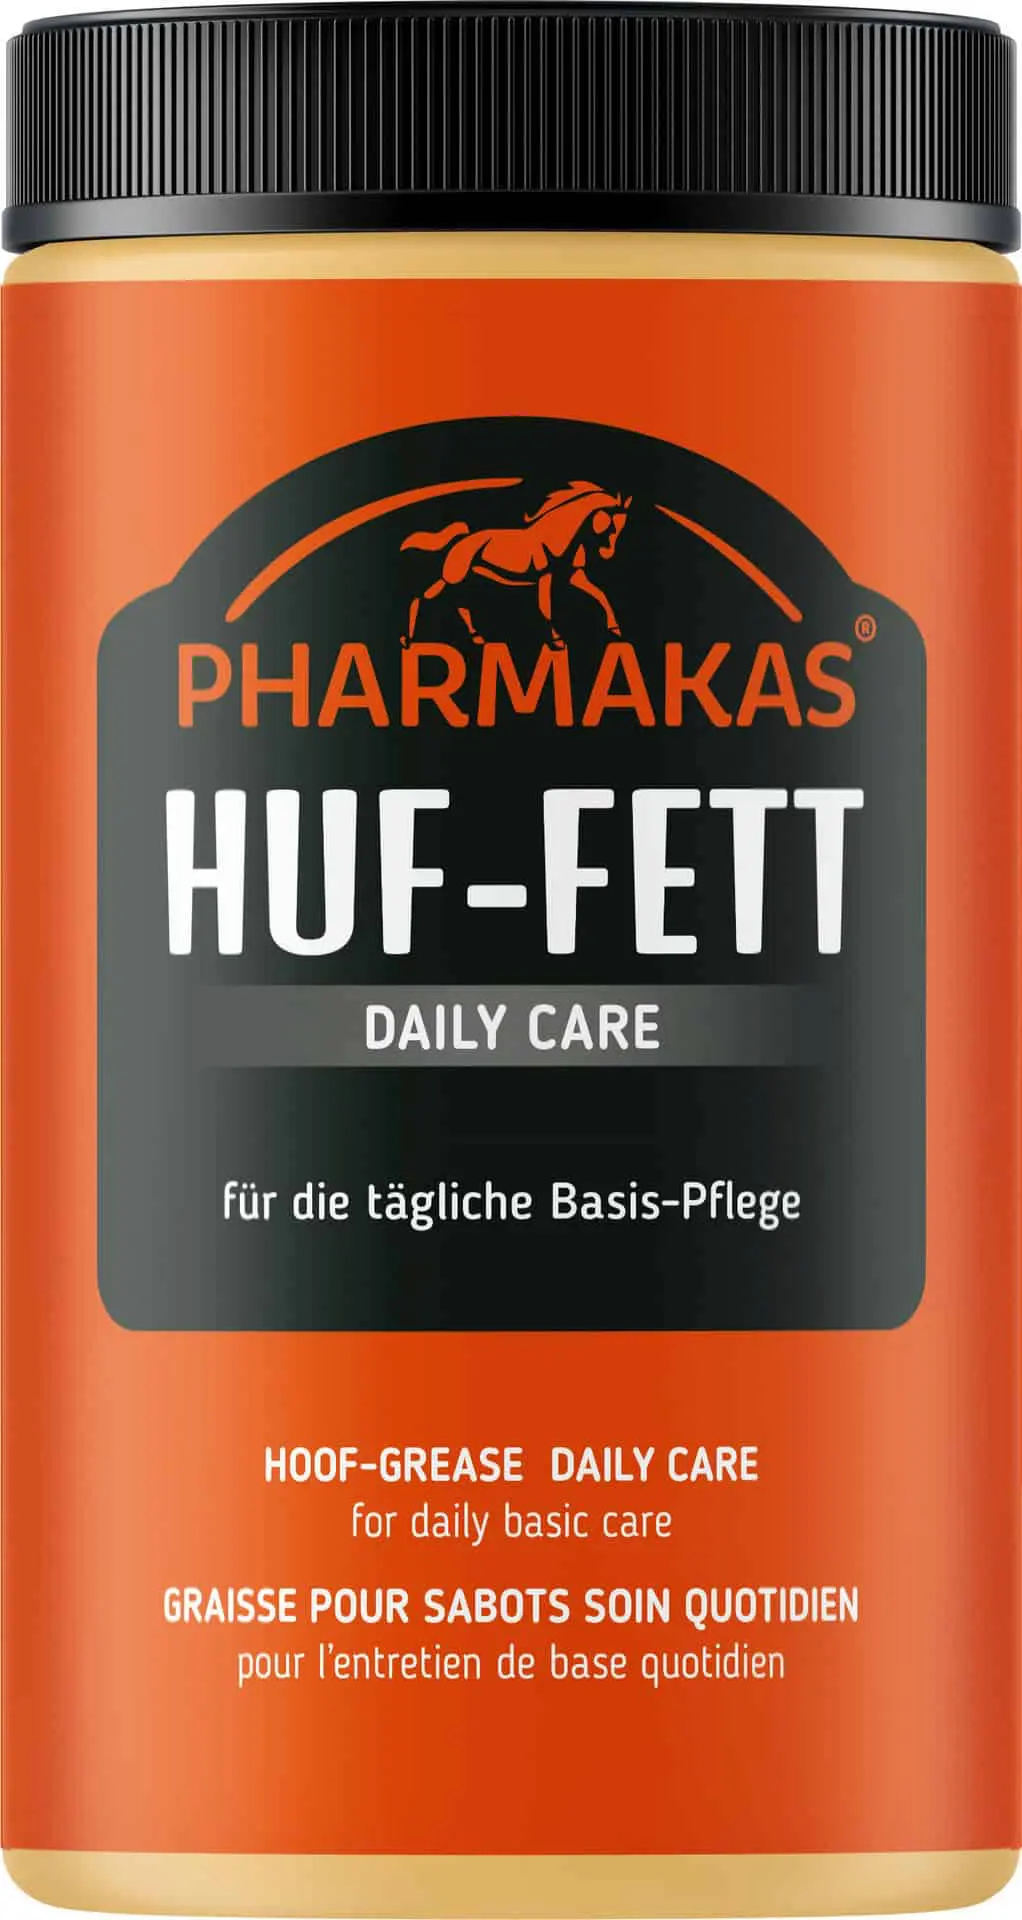 Pharmakas Huf-Fett Daily Care 1L